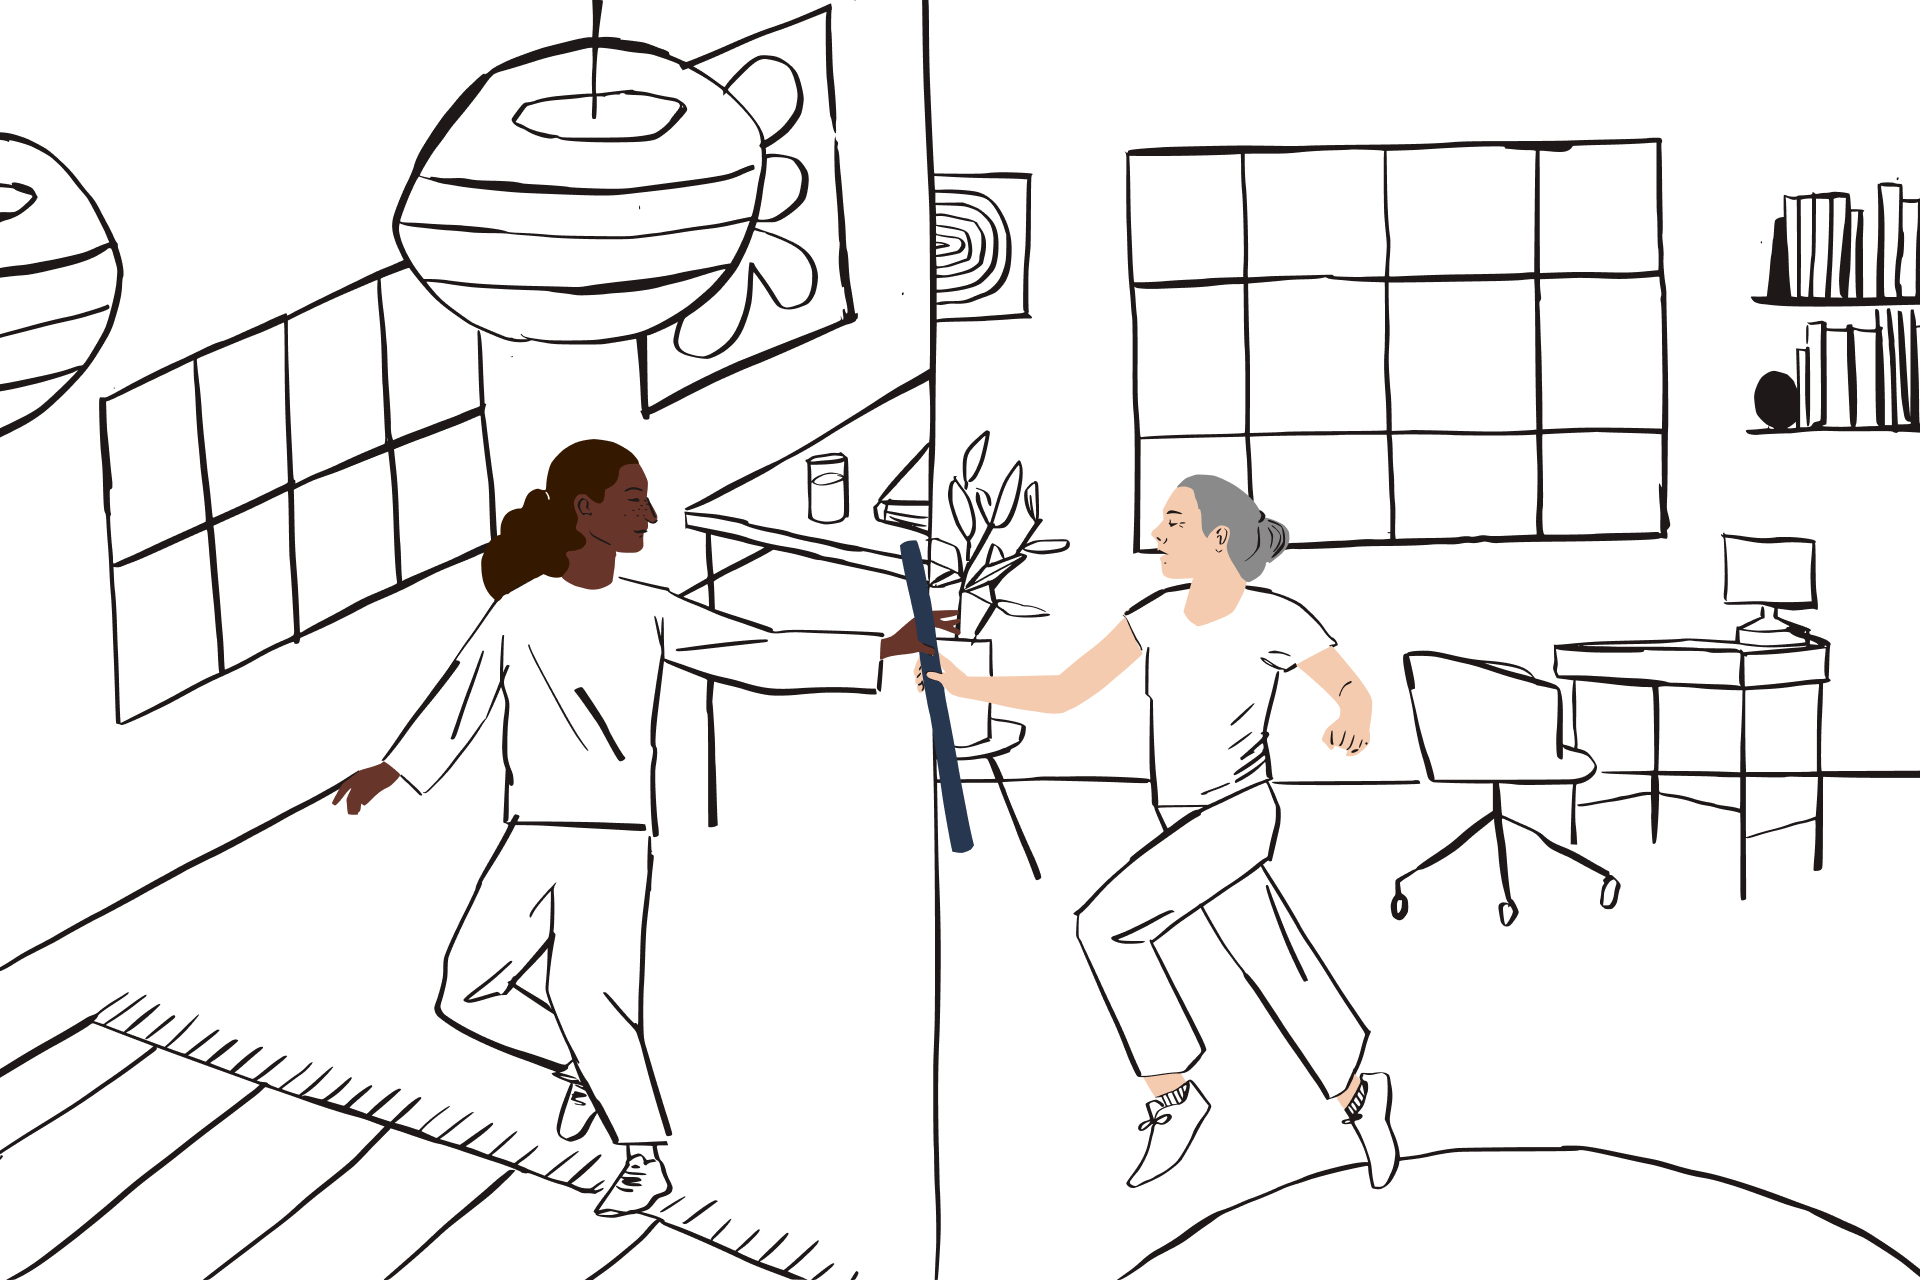 Immagine stilizzata di una persona che passa il testimone da un ufficio domestico a una persona che lavora in un altro spazio